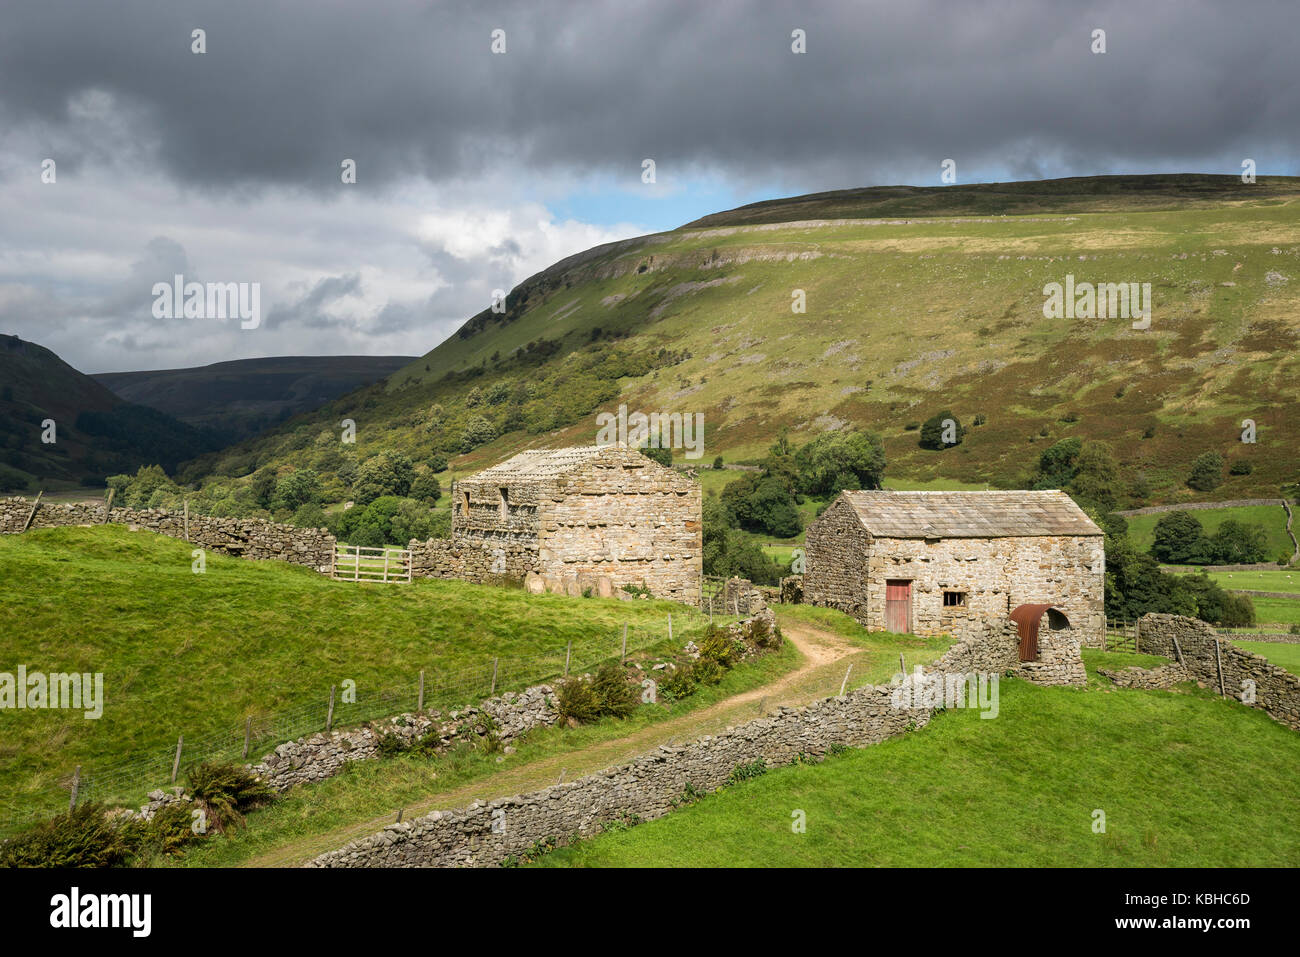 Die schöne Landschaft rund um Muker in Swaledale, Yorkshire Dales, England. Mit dem traditionellen Stein Scheunen oder 'Kuh Häuser ''Kuh' usses'. Stockfoto